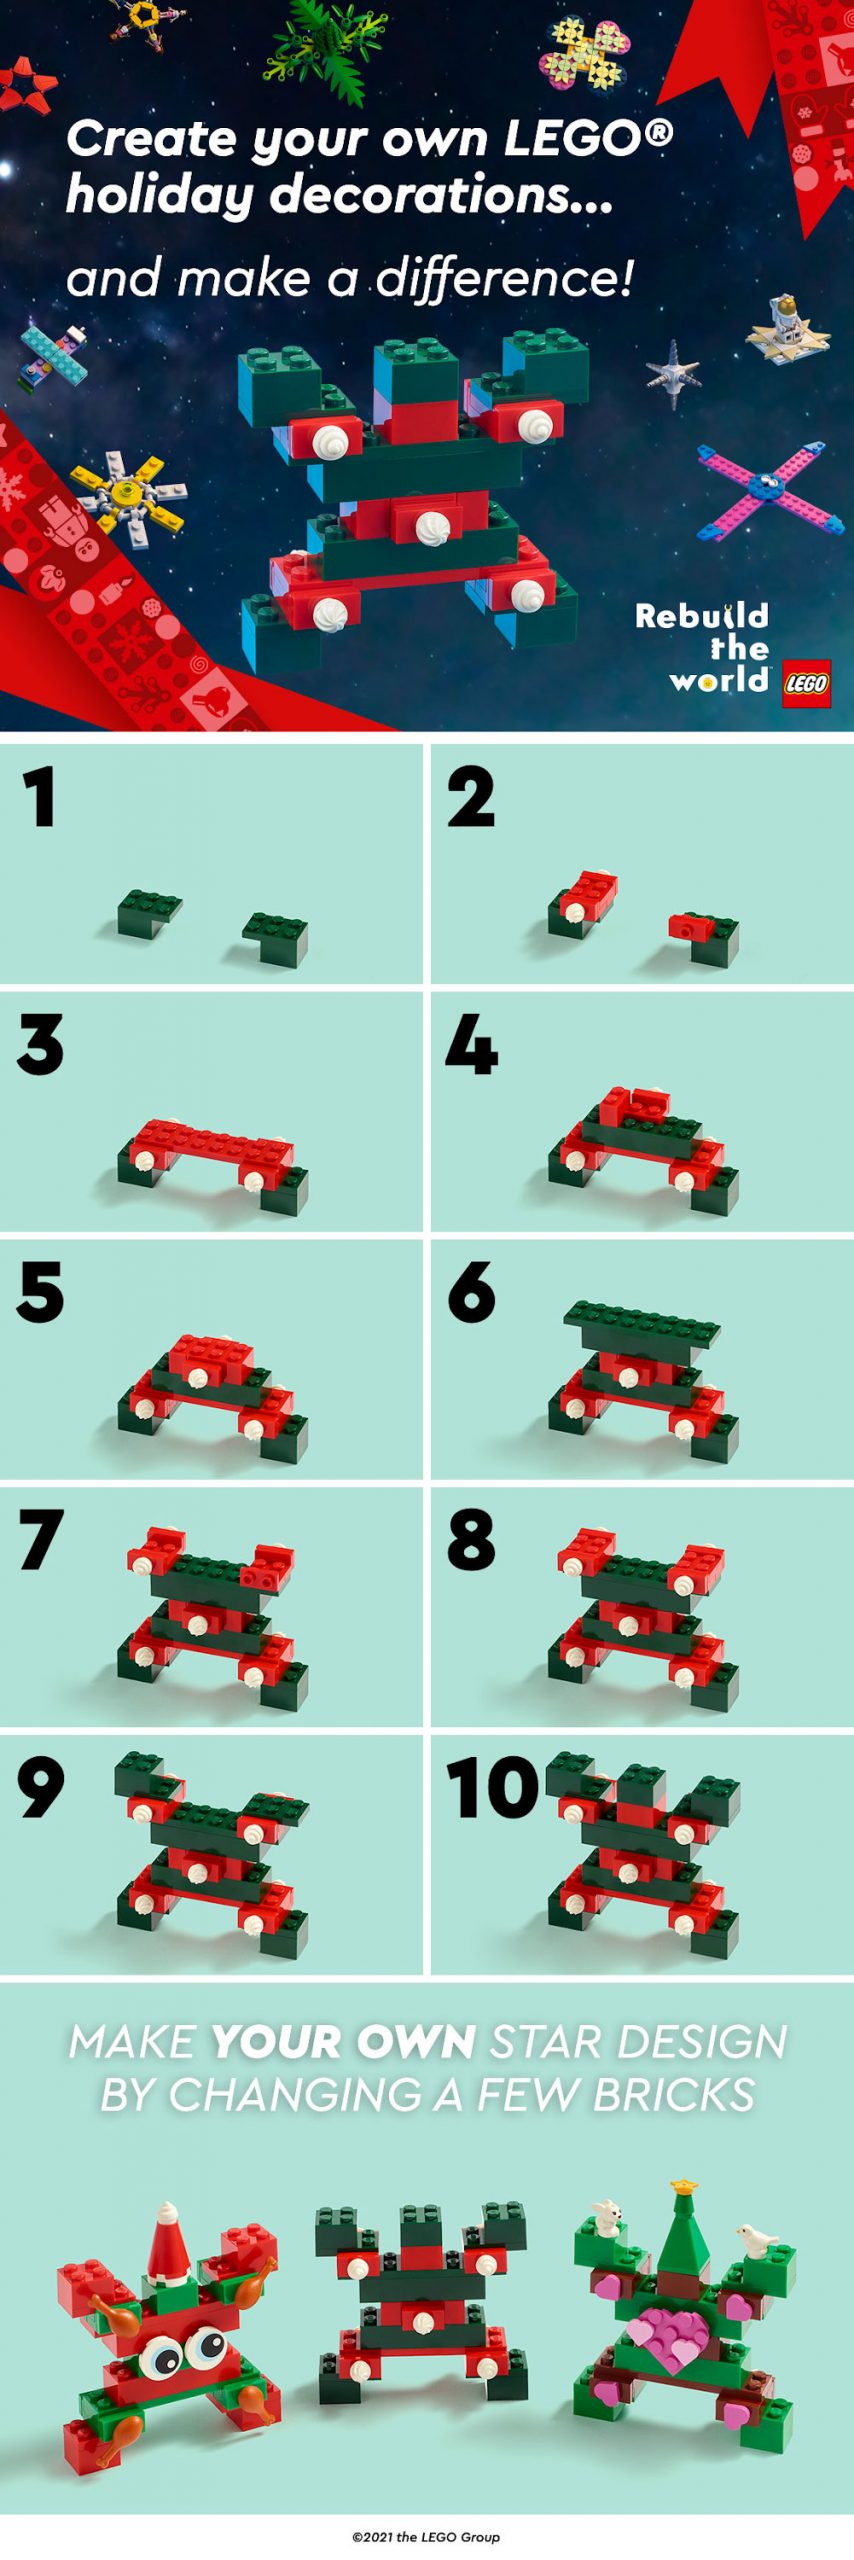 Grupul LEGO își invită fanii să construiască o stea și să contribuie la schimbare